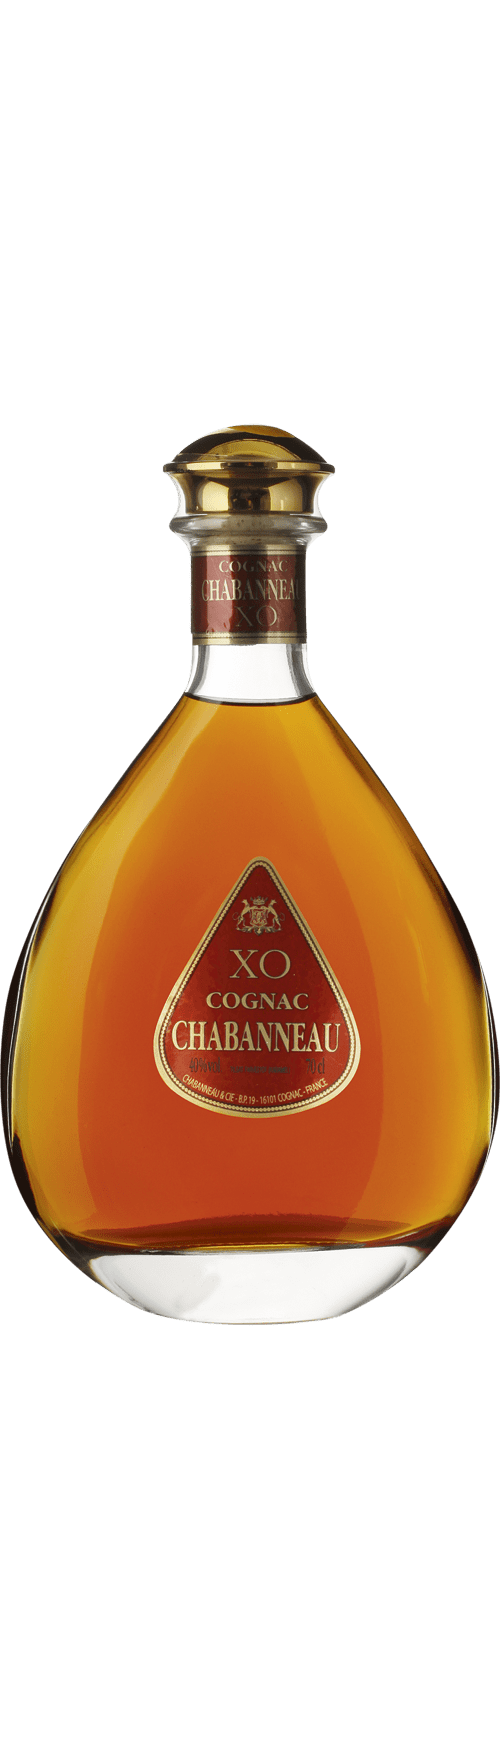 Cognac XO Chabanneau